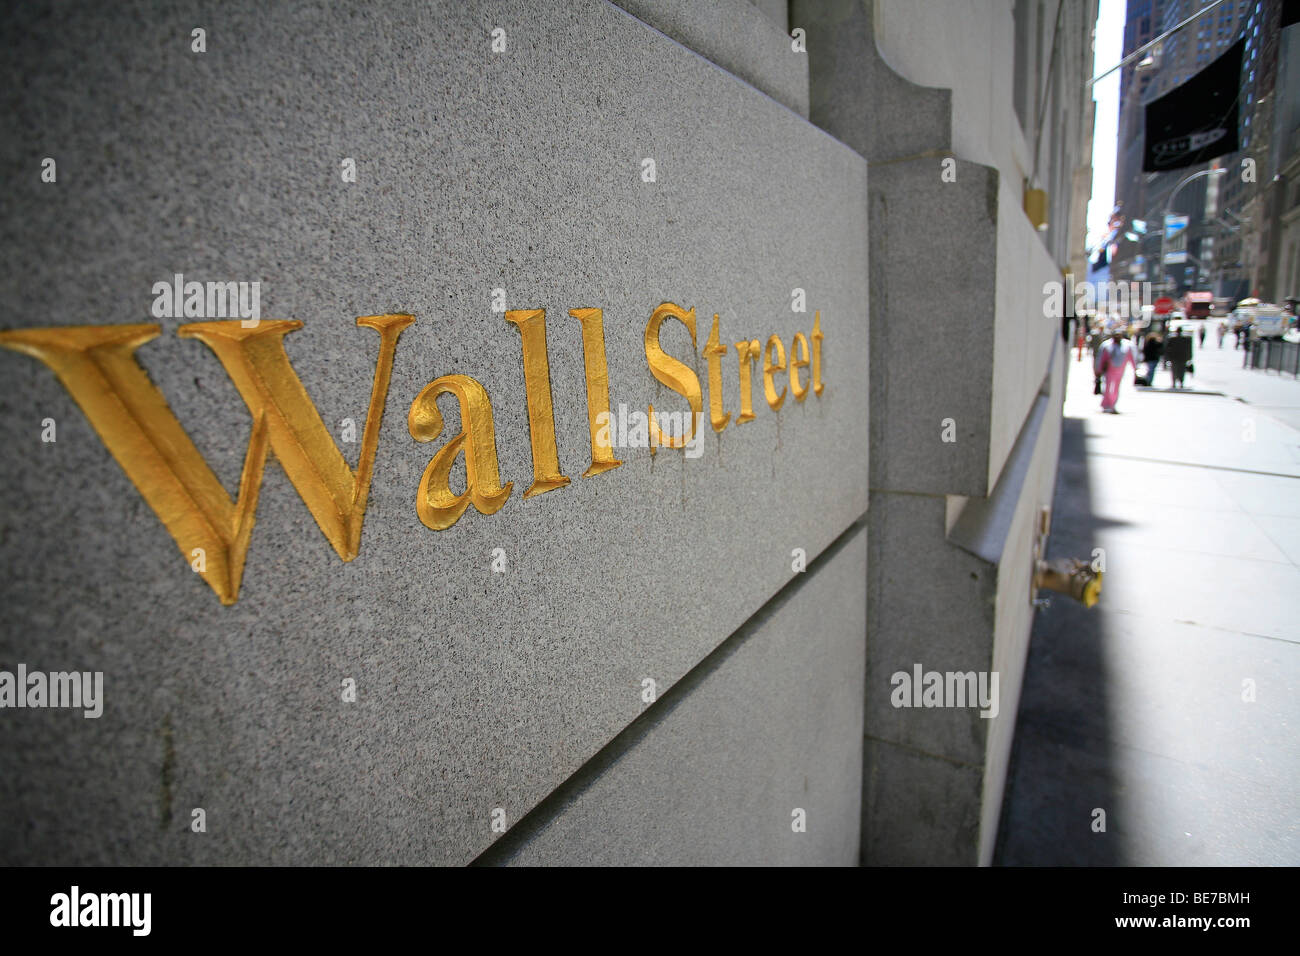 Golden Wall street segno scolpito su un muro nel quartiere finanziario area del centro cittadino di Manhattan a New York City, Stati Uniti. Foto Stock